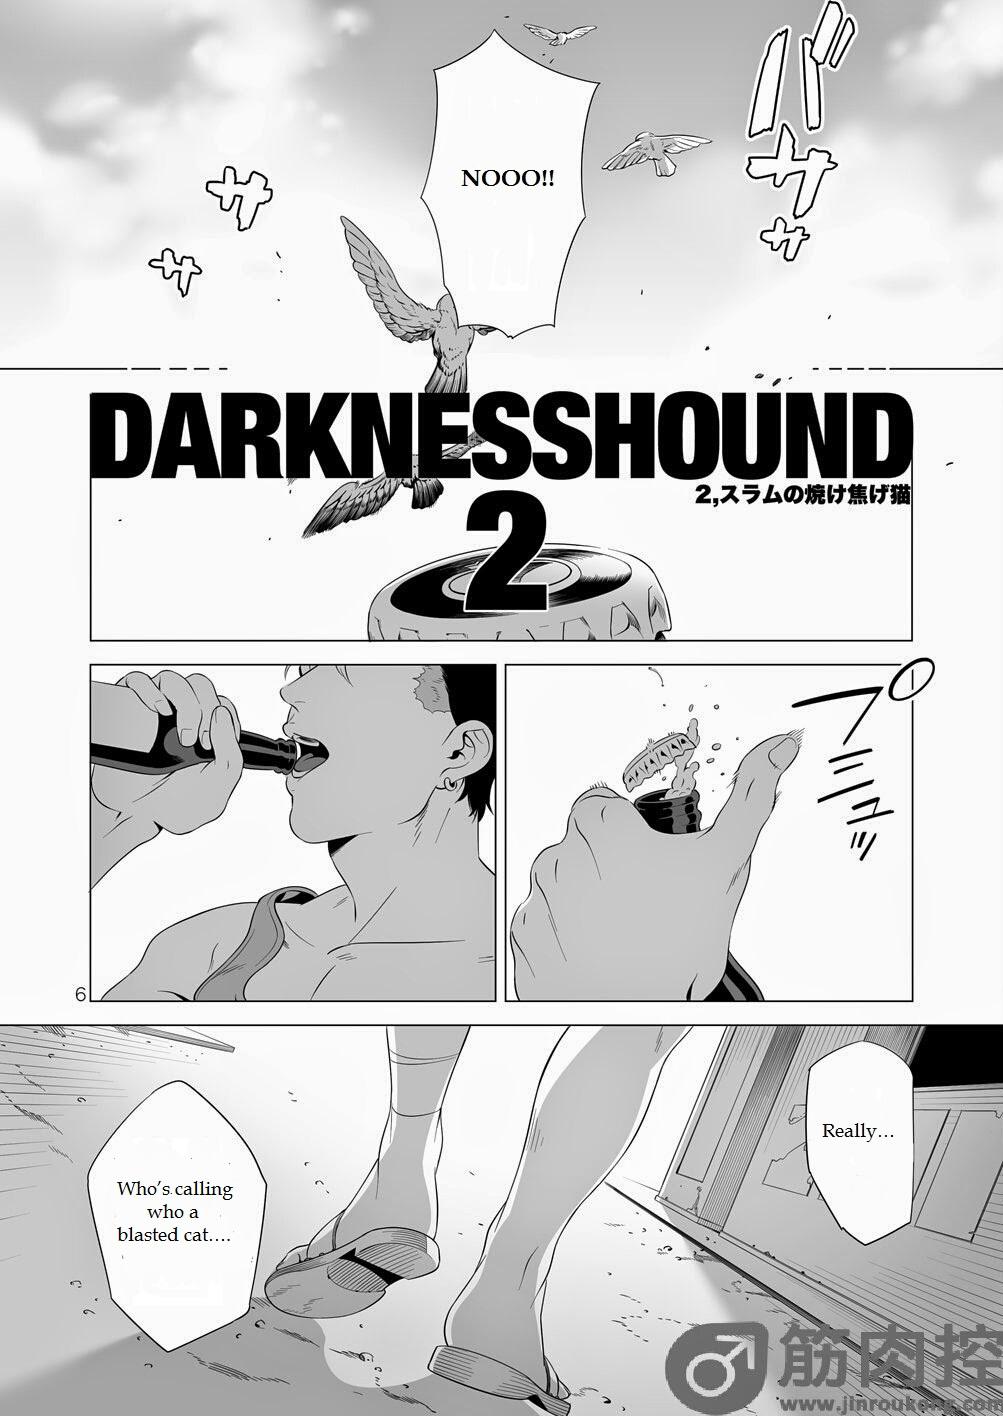 Bare Darkness Hound 2 Milf Fuck - Page 5